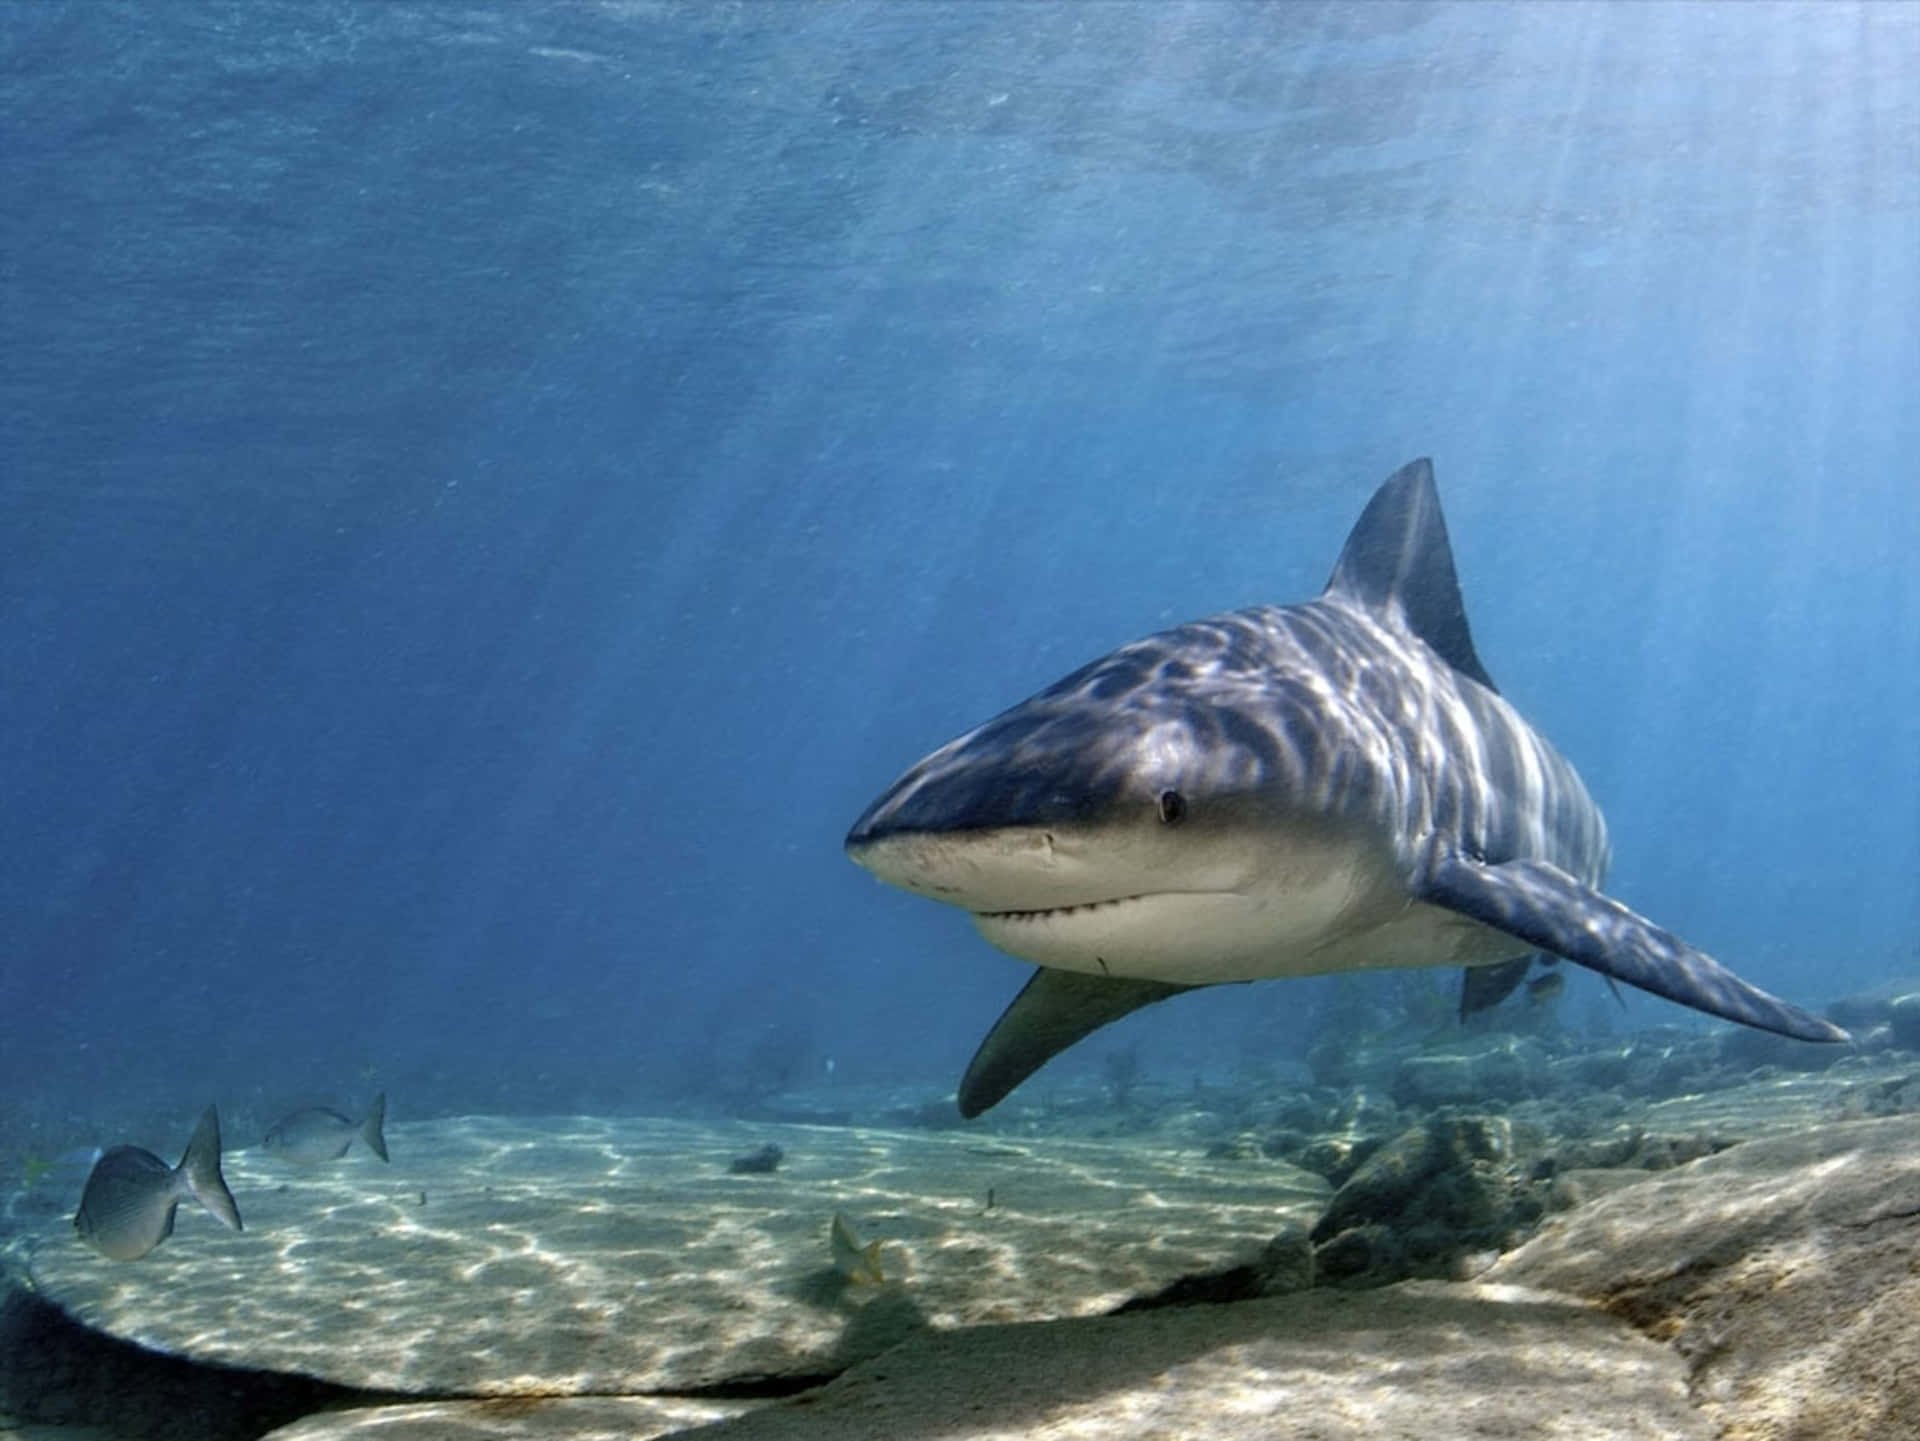 An amazing close-up of a fierce shark